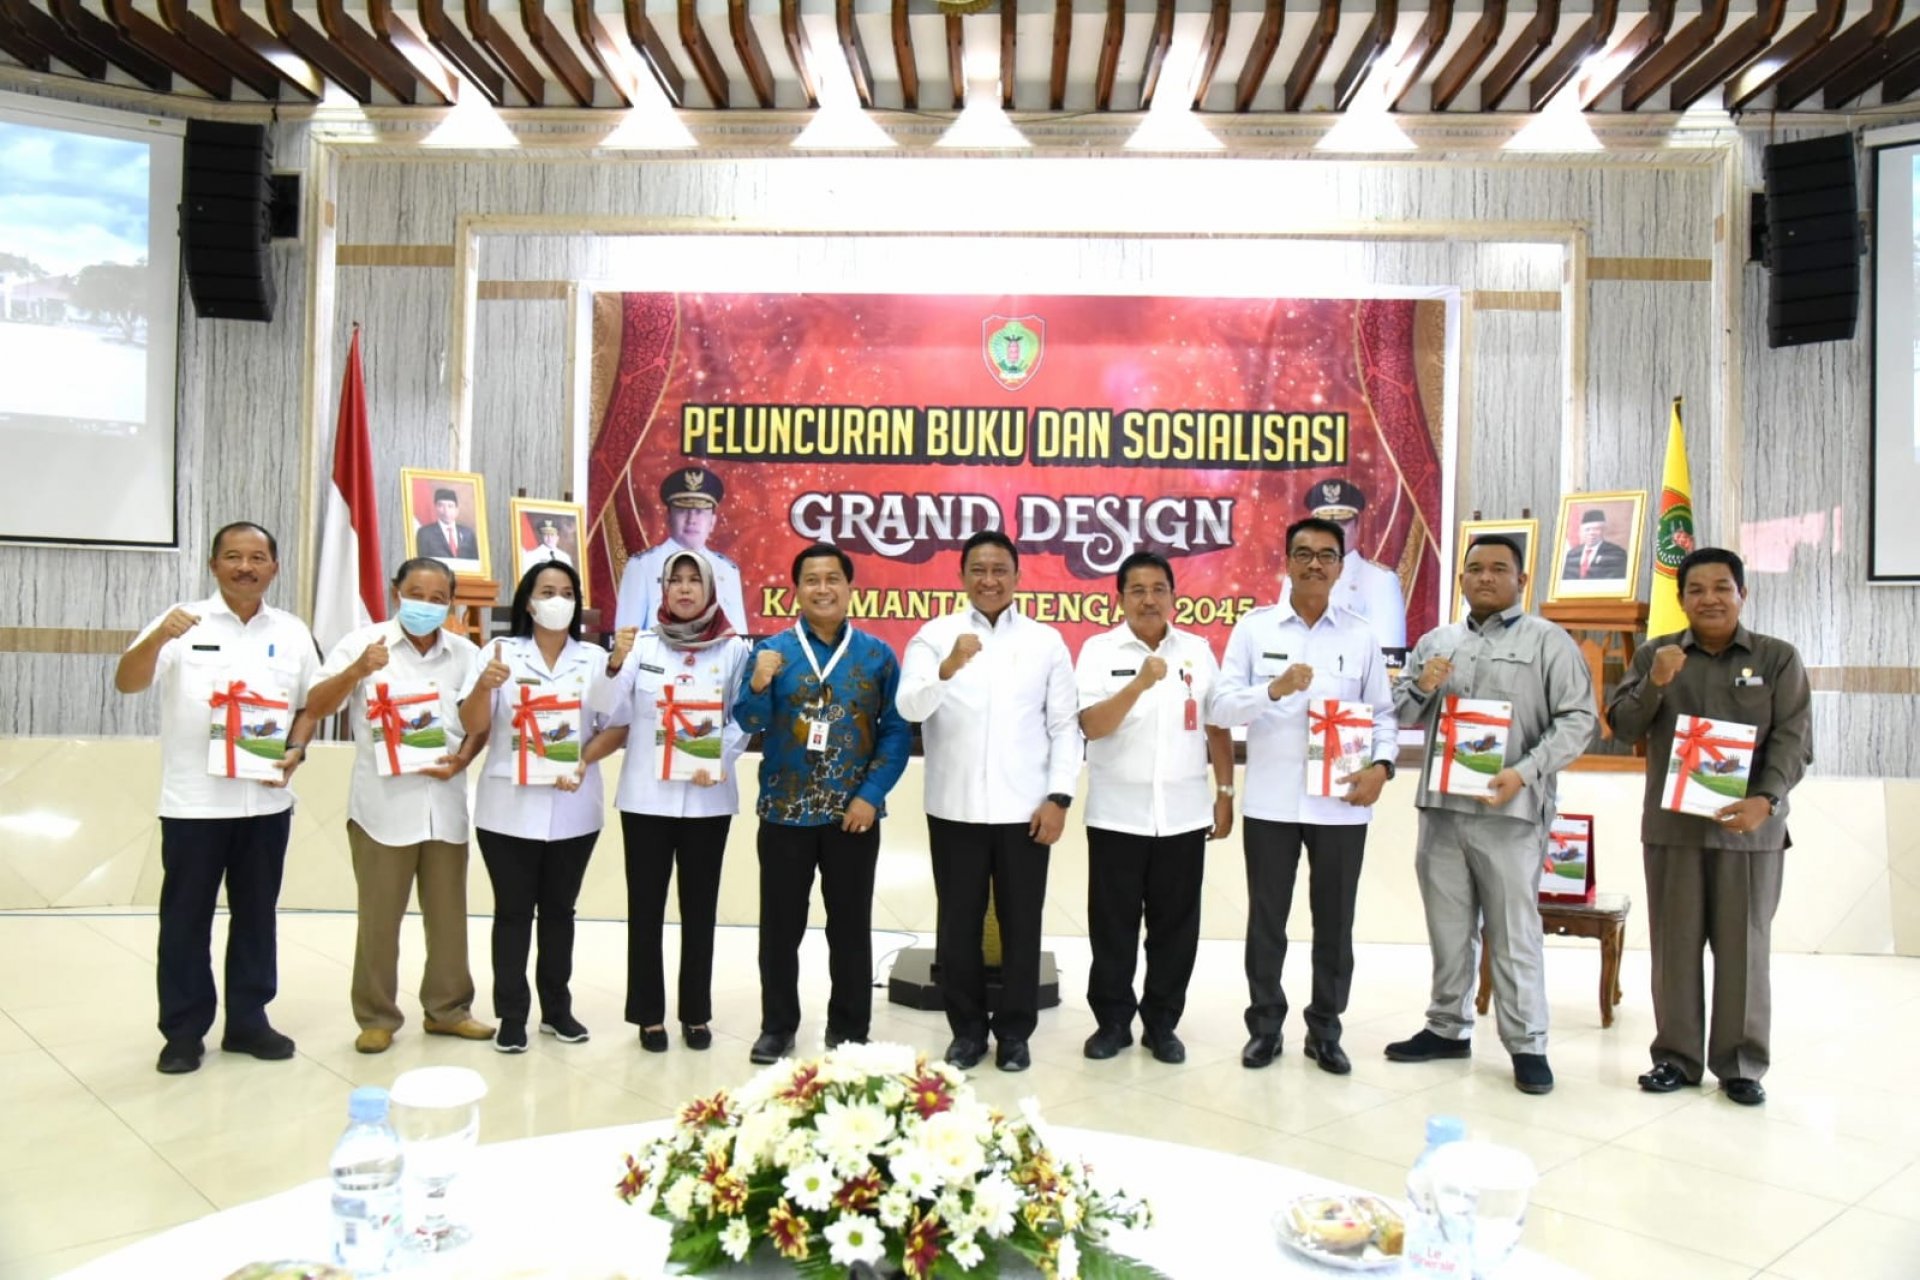 Buku Grand Desain Kalimantan Tengah 2045 Resmi Diluncurkan